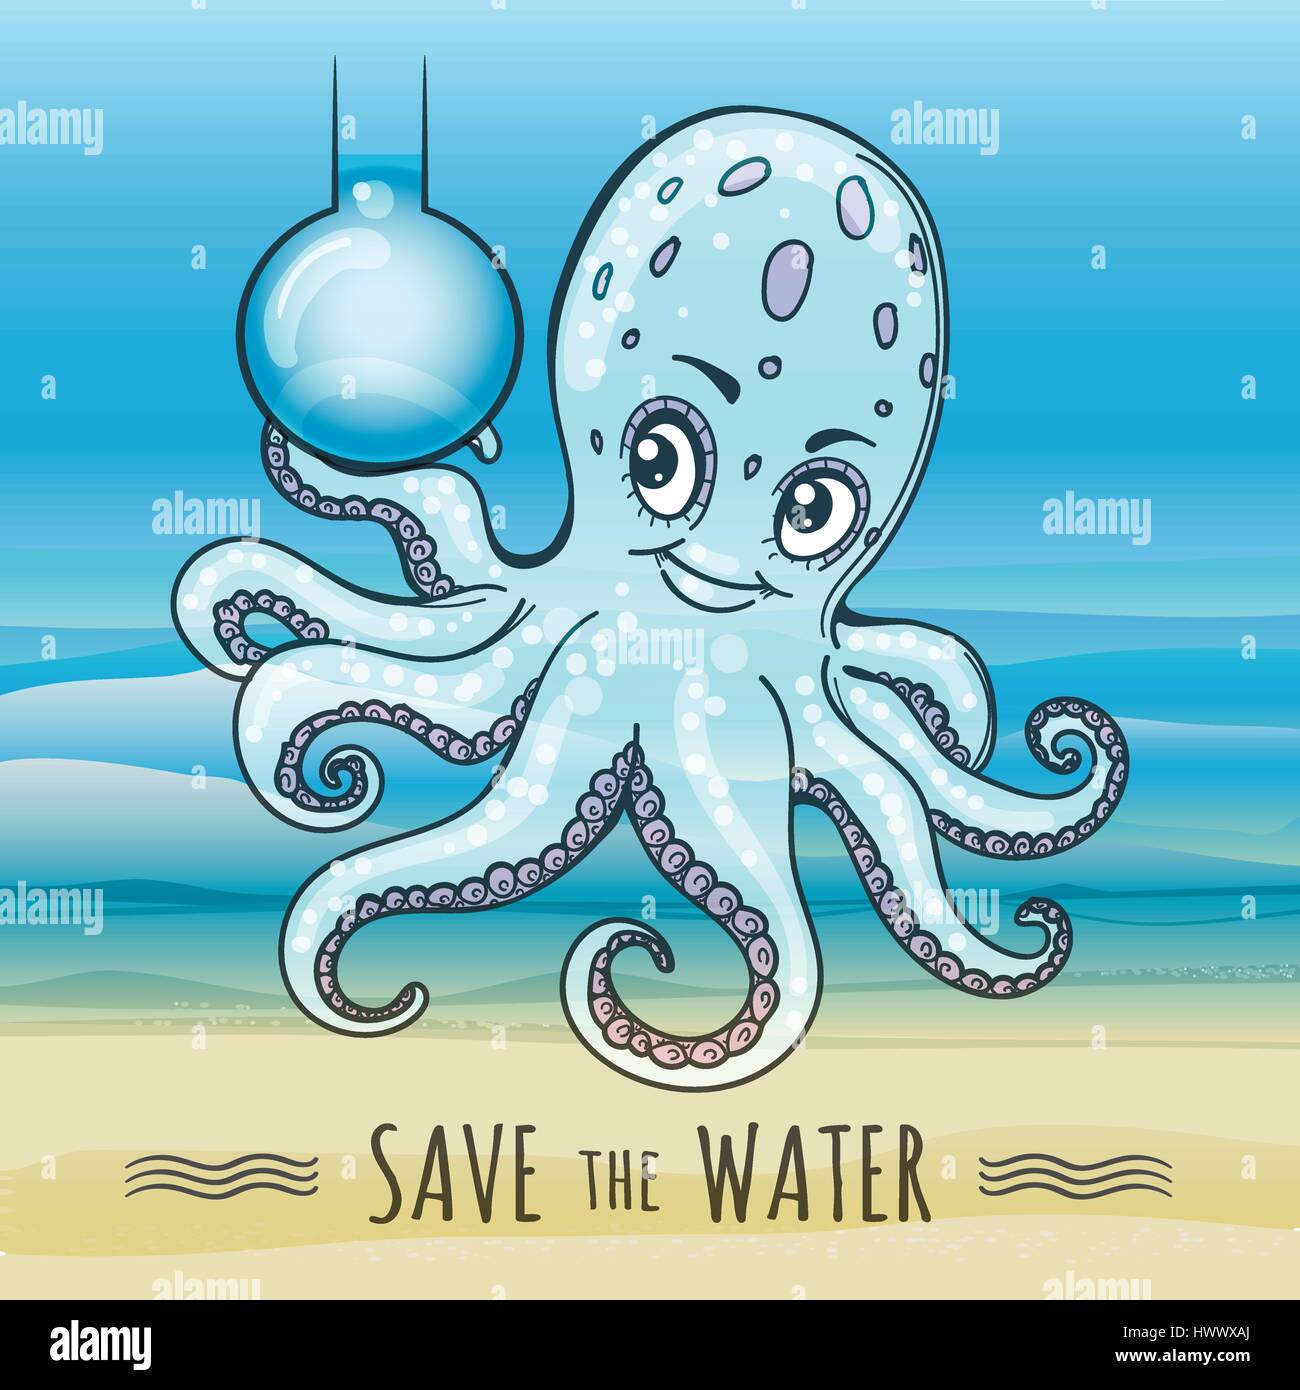 Speichern Sie das Wasser-Poster im Cartoon-Stil. Lustige Kraken halten Flasche mit frischem Wasser. Vektor-Illustration. Stock Vektor